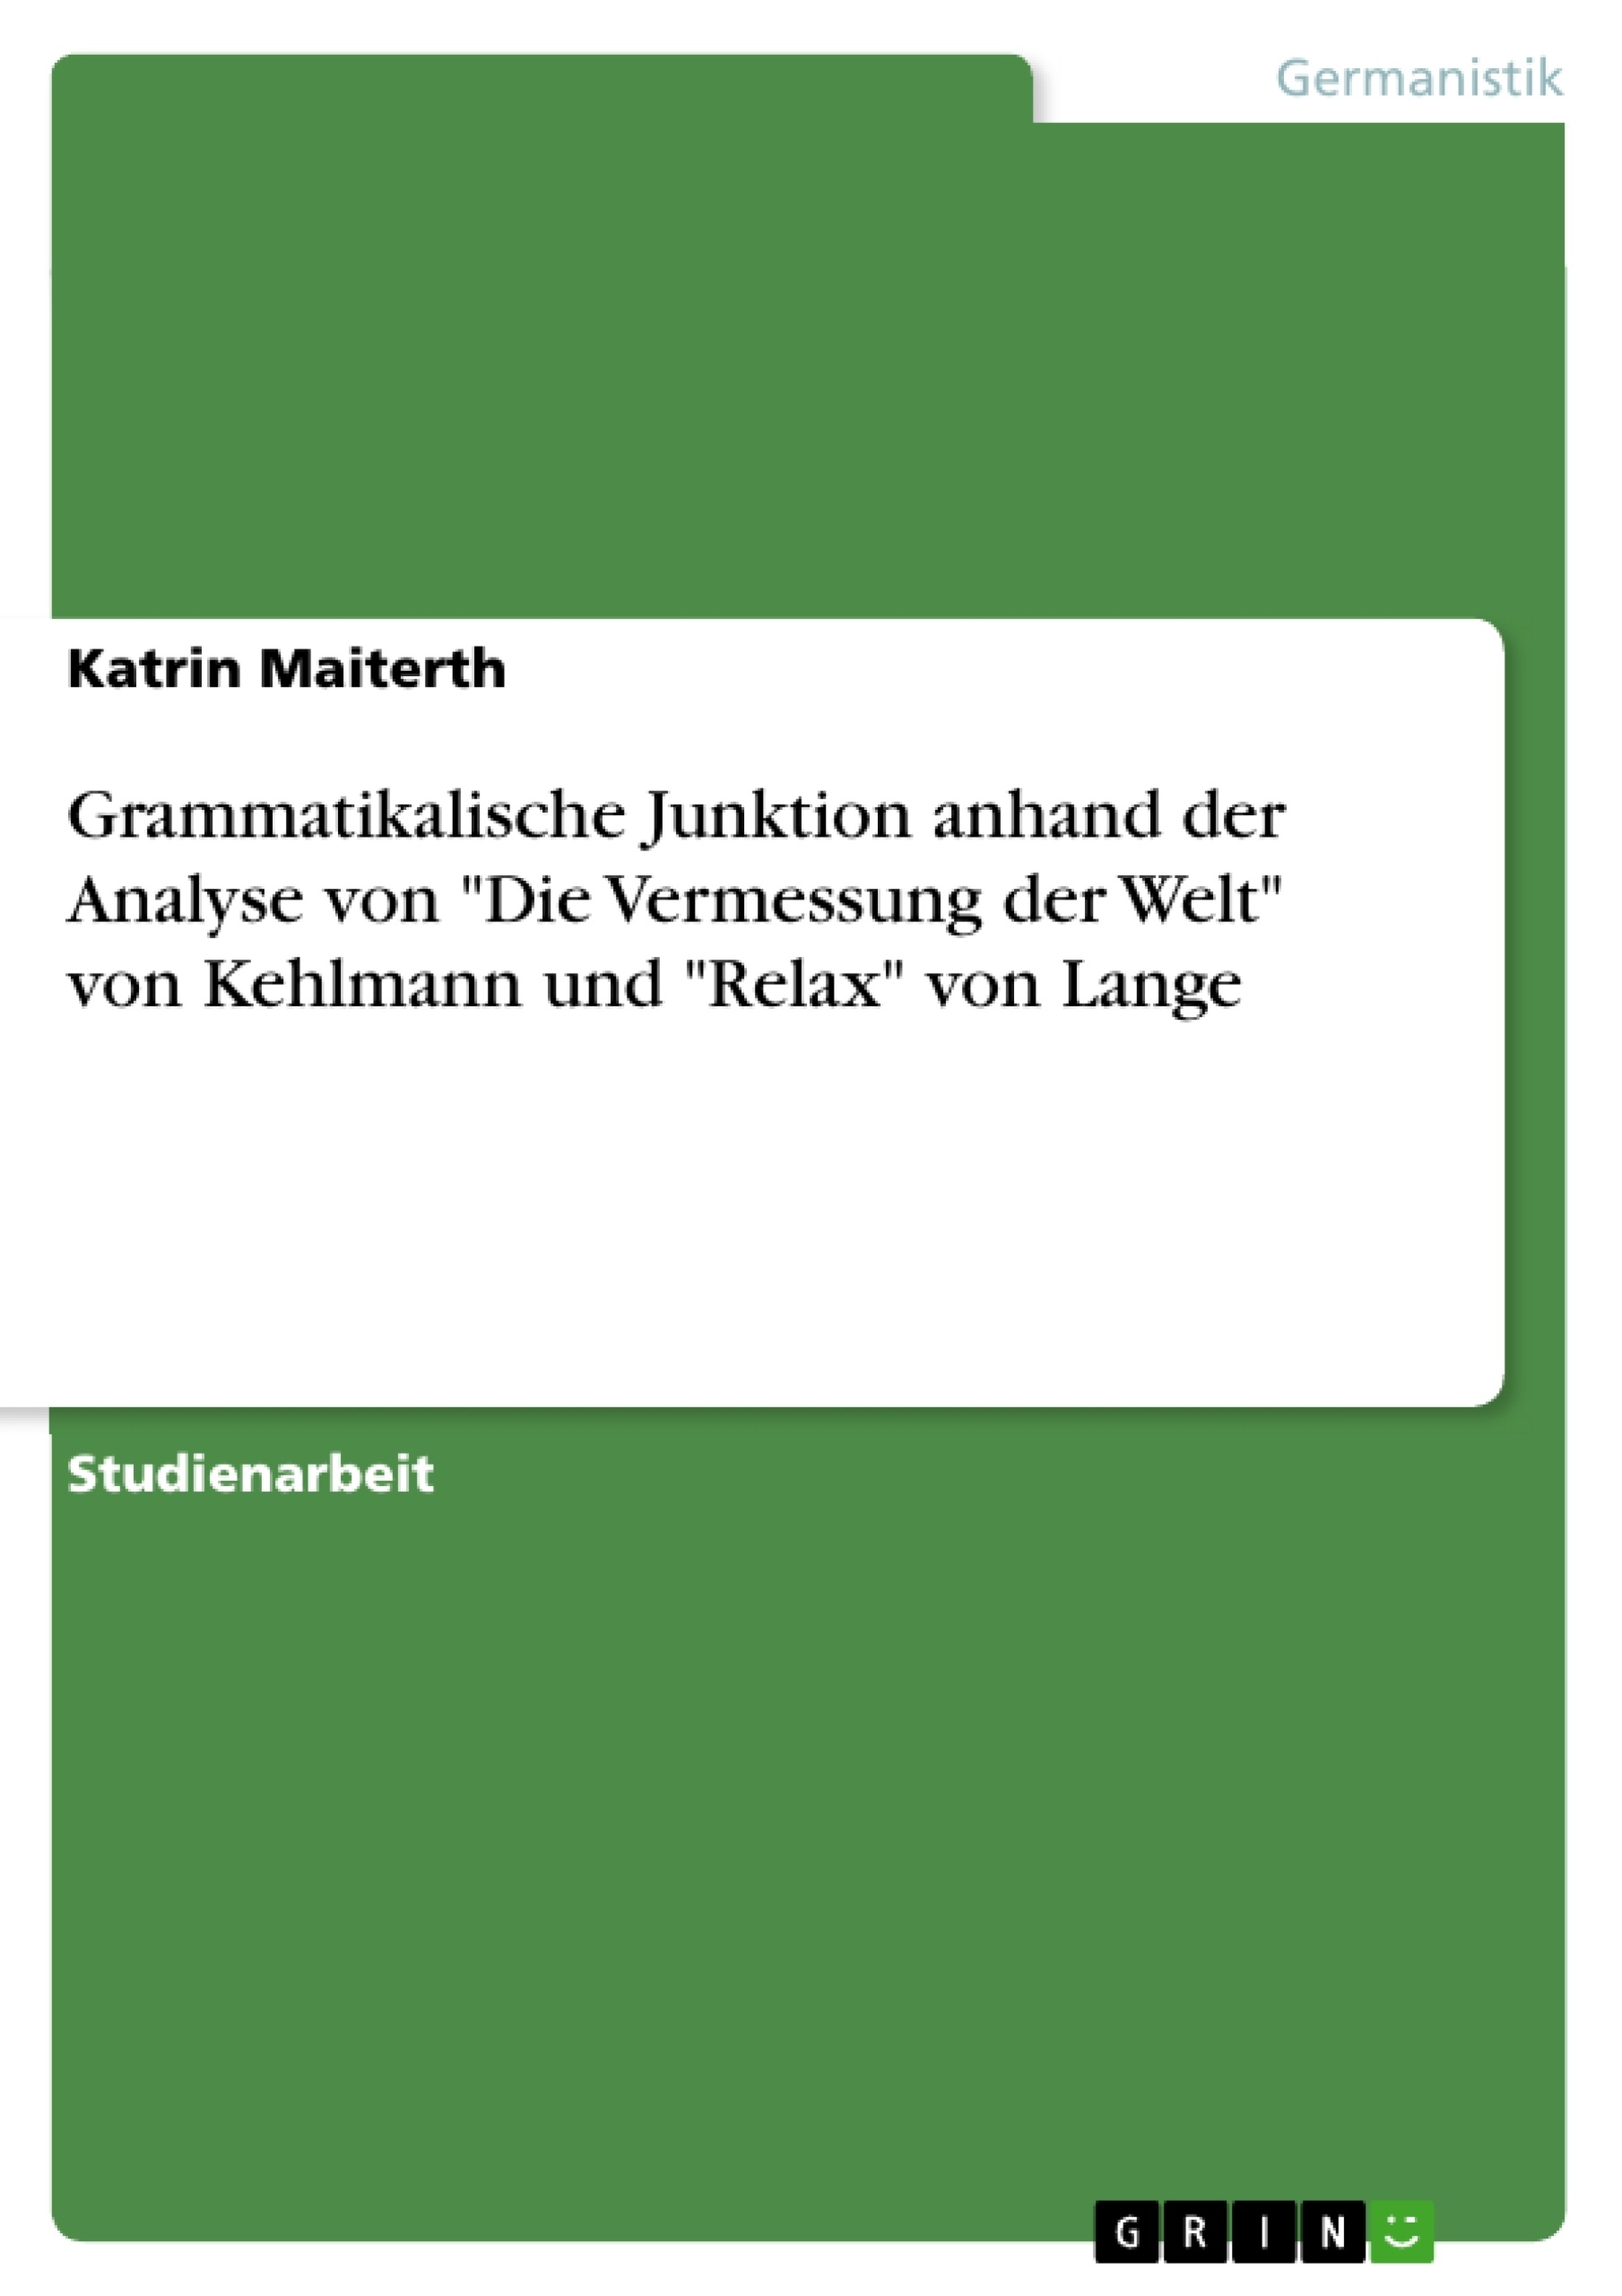 Title: Grammatikalische Junktion anhand der Analyse von "Die Vermessung der Welt" von Kehlmann und "Relax" von Lange